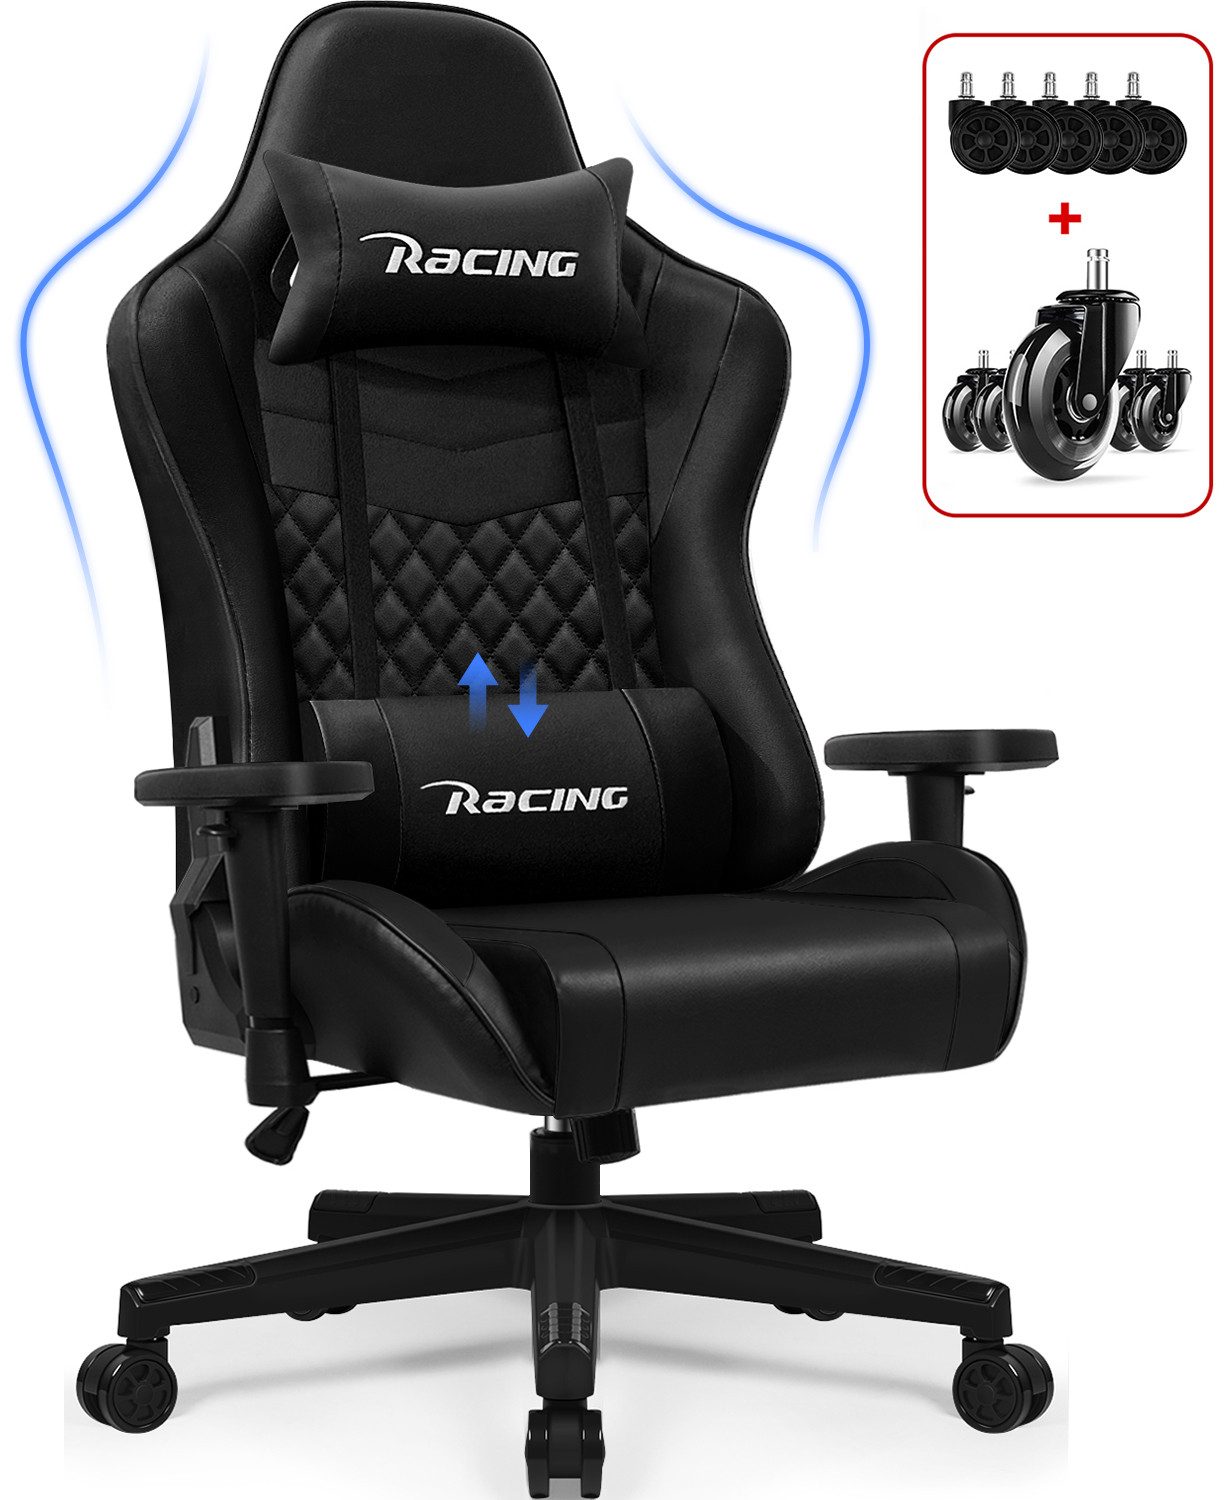 Hiazurm Gaming-Stuhl Gaming Stuhl, Bürostuhl Ergonomisch Wippfunktion bis zu 170° (Gaming Chair Gepolstert mit Verstellbare Lendenkissen, Kopfkissen und Armlehnen), Gamer Stuhl 150kg Belastbarkeit